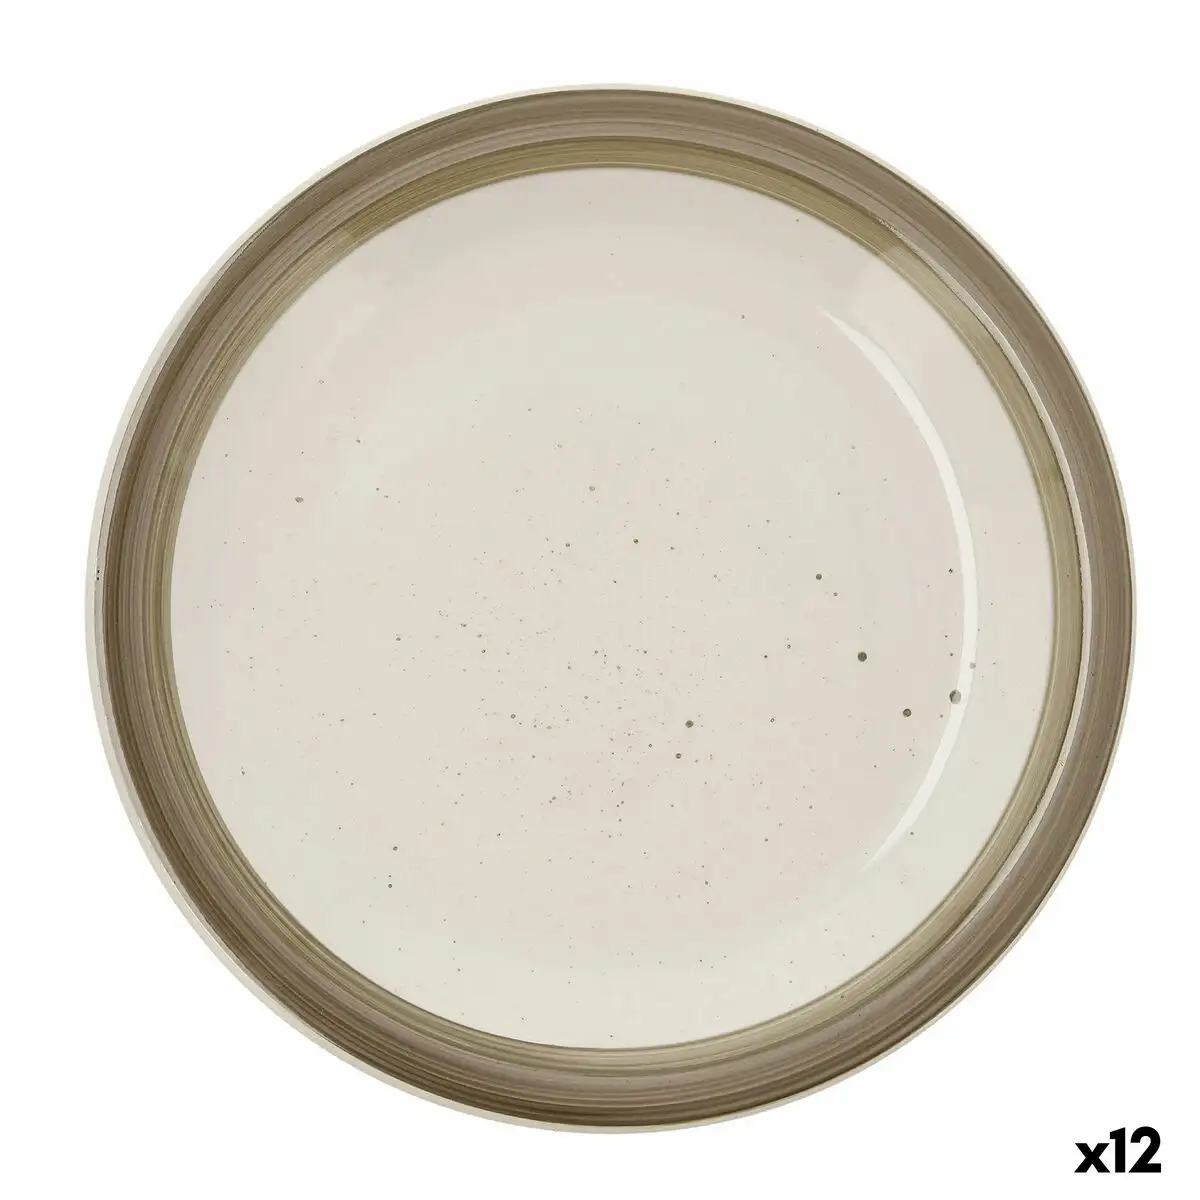 Assiette plate quid allegra nature ceramique bicolore o 27 cm 12 unites _7321. Bienvenue sur DIAYTAR SENEGAL - Où Chaque Détail compte. Plongez dans notre univers et choisissez des produits qui ajoutent de l'éclat et de la joie à votre quotidien.